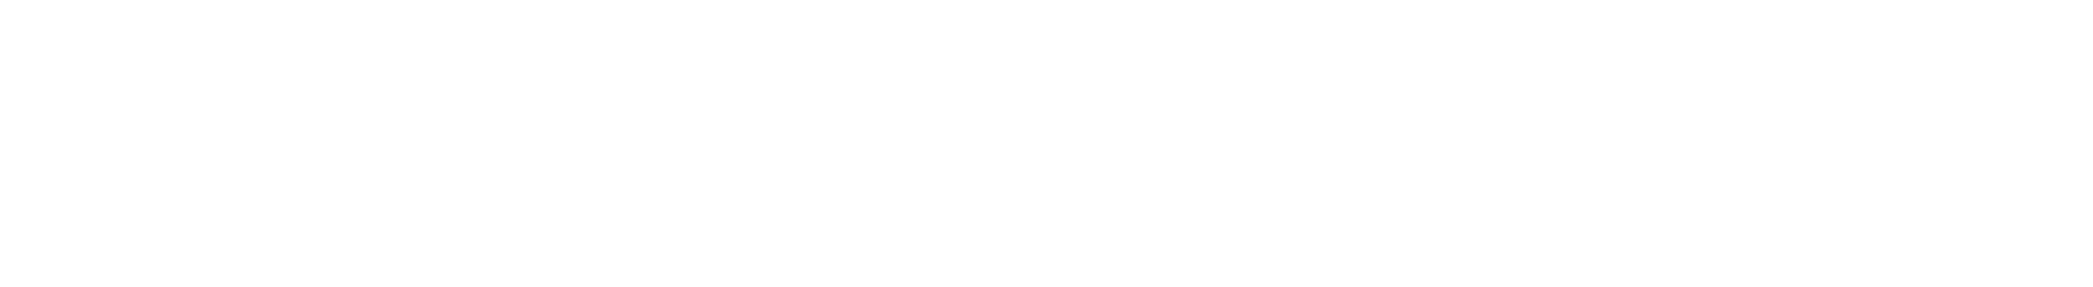 AfA-Editorial-Illustration-header